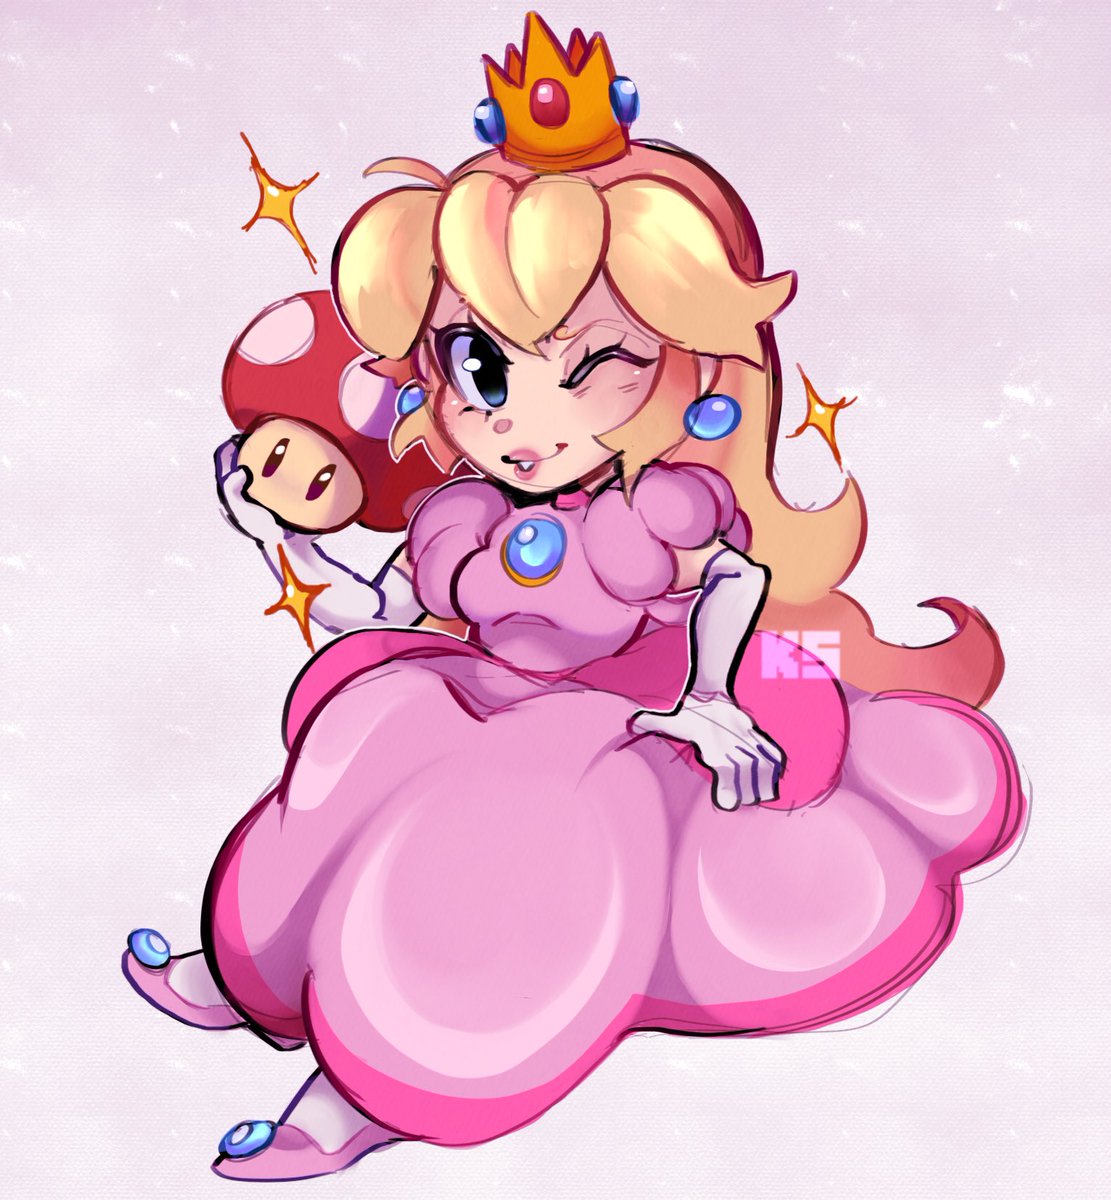 Peach chibi doodle #MarioMovie #princesspeach